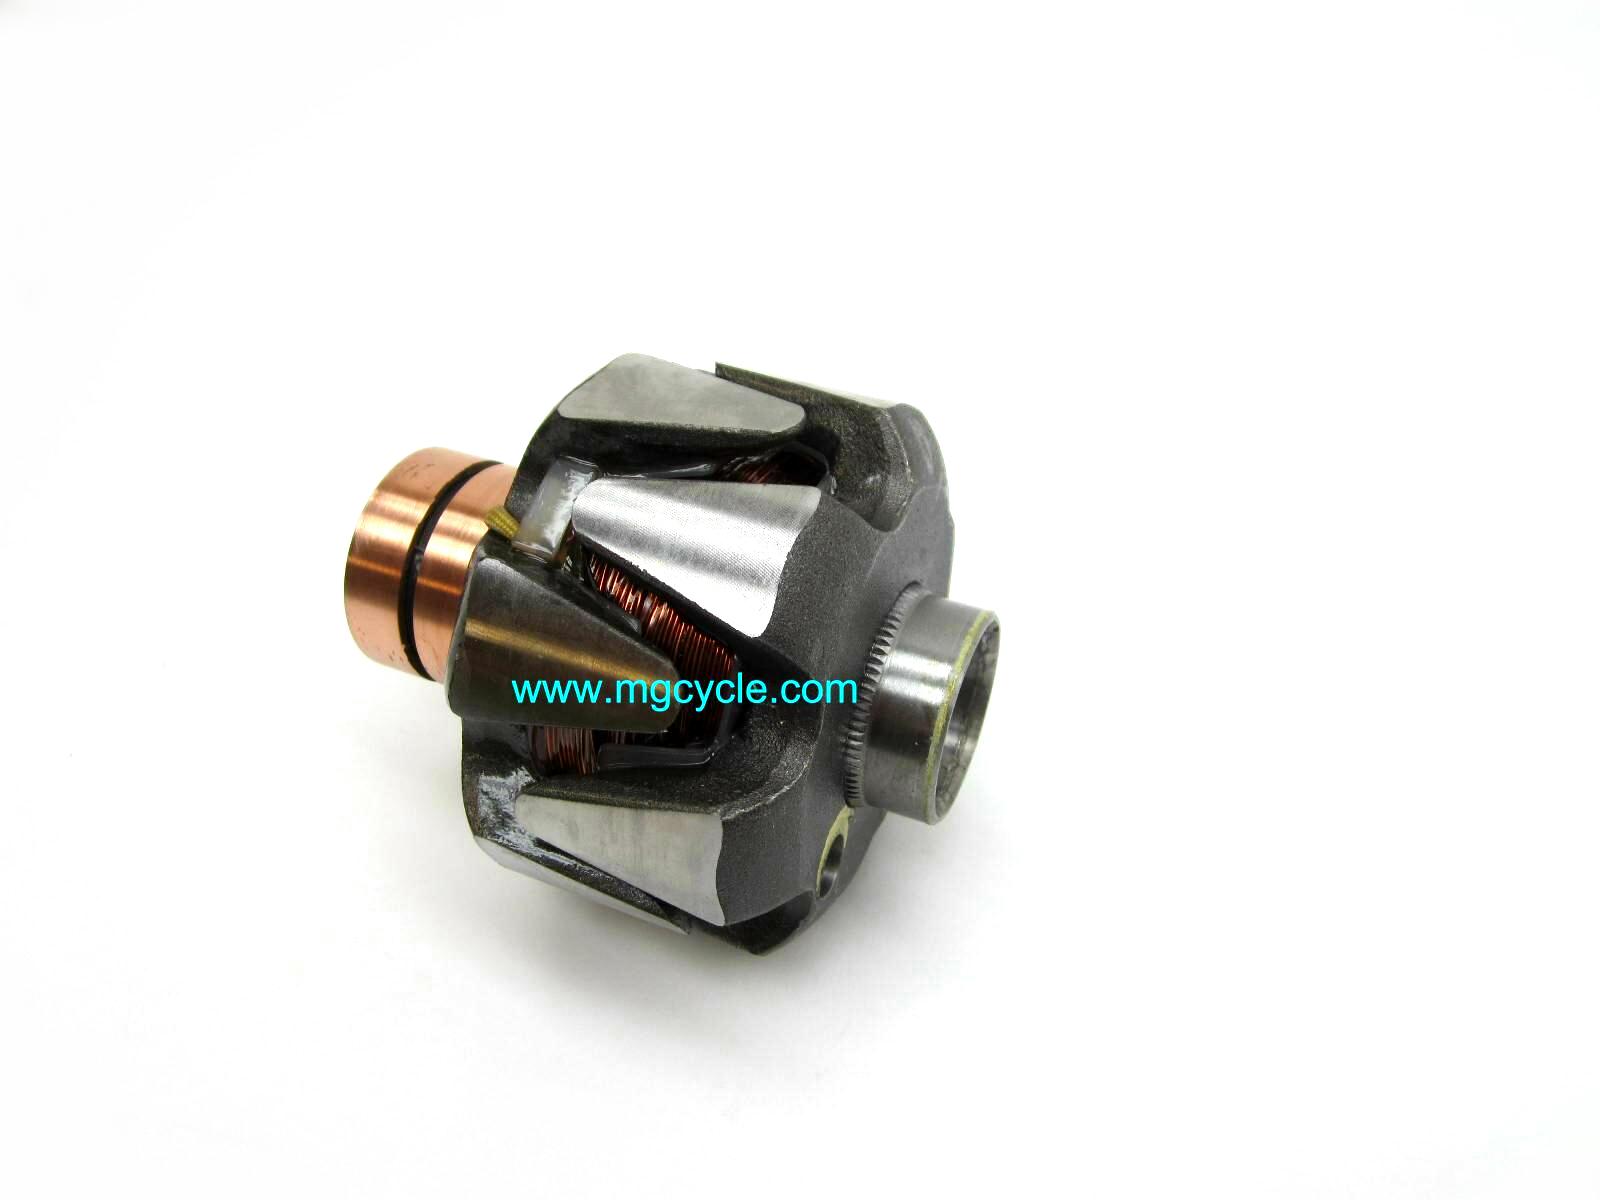 Alternator rotor, ~3.4 ohms for Bosch charging systems Guzzi BMW